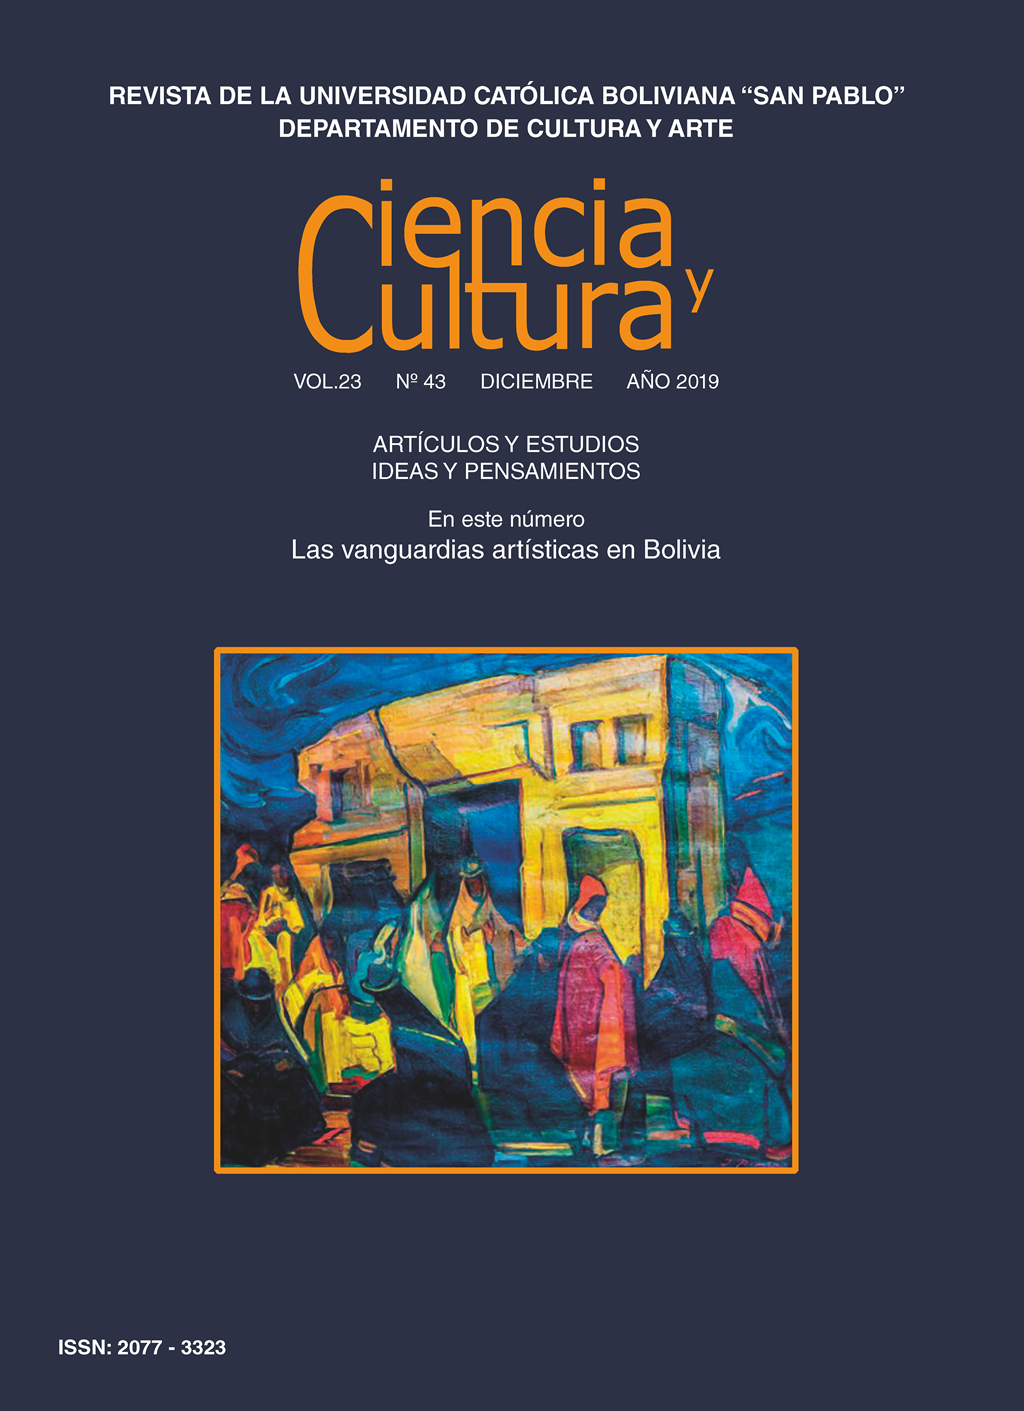 Las vanguardias artísticas en Bolivia